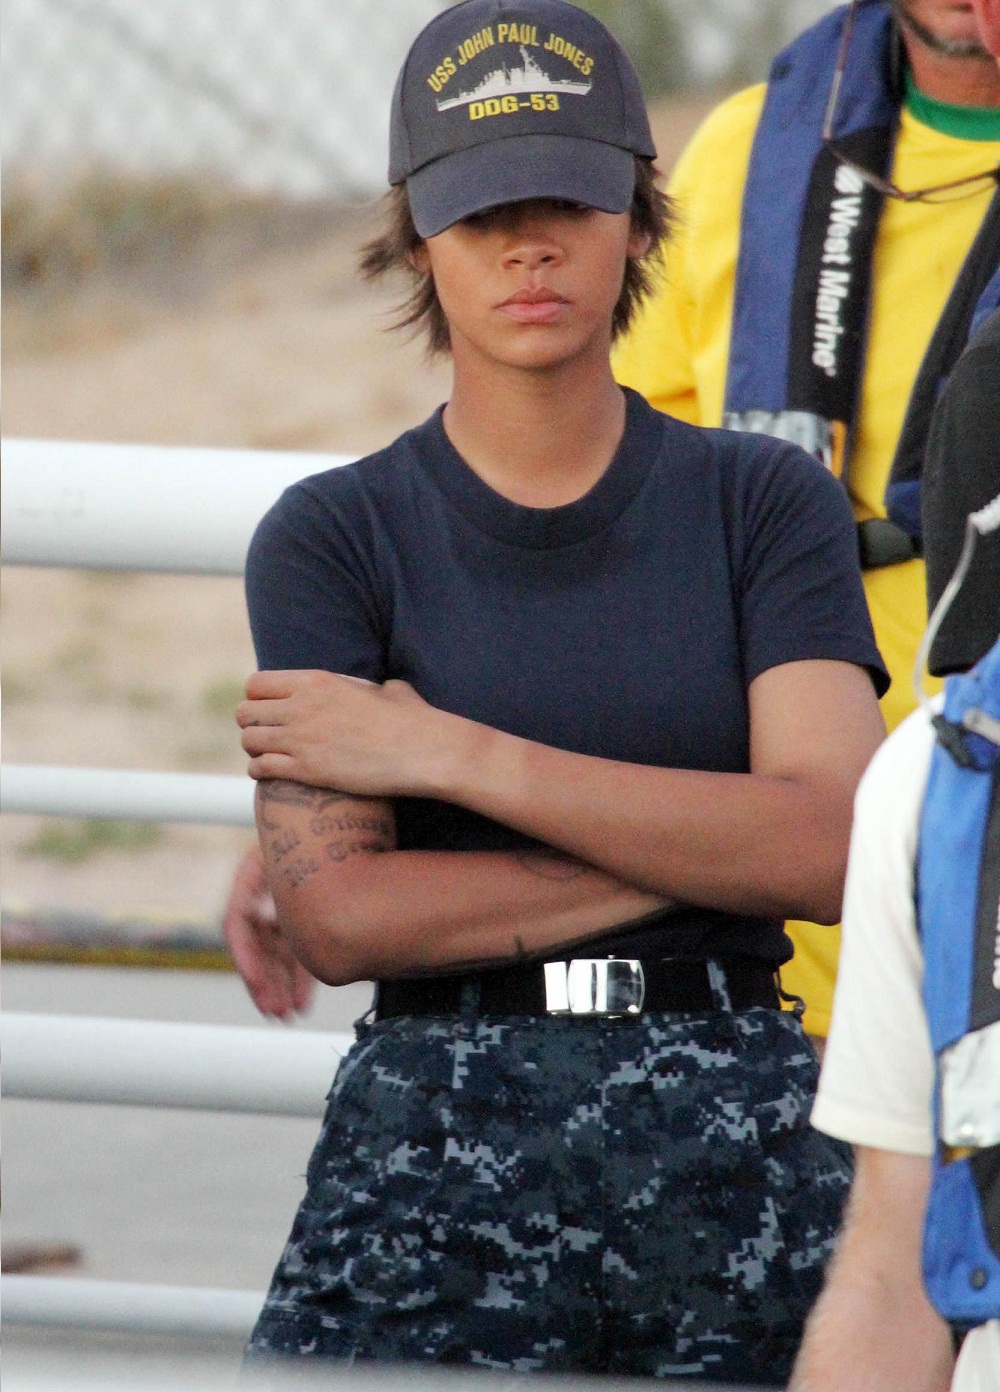 Rihanna na hawajskim planie "Battleship"